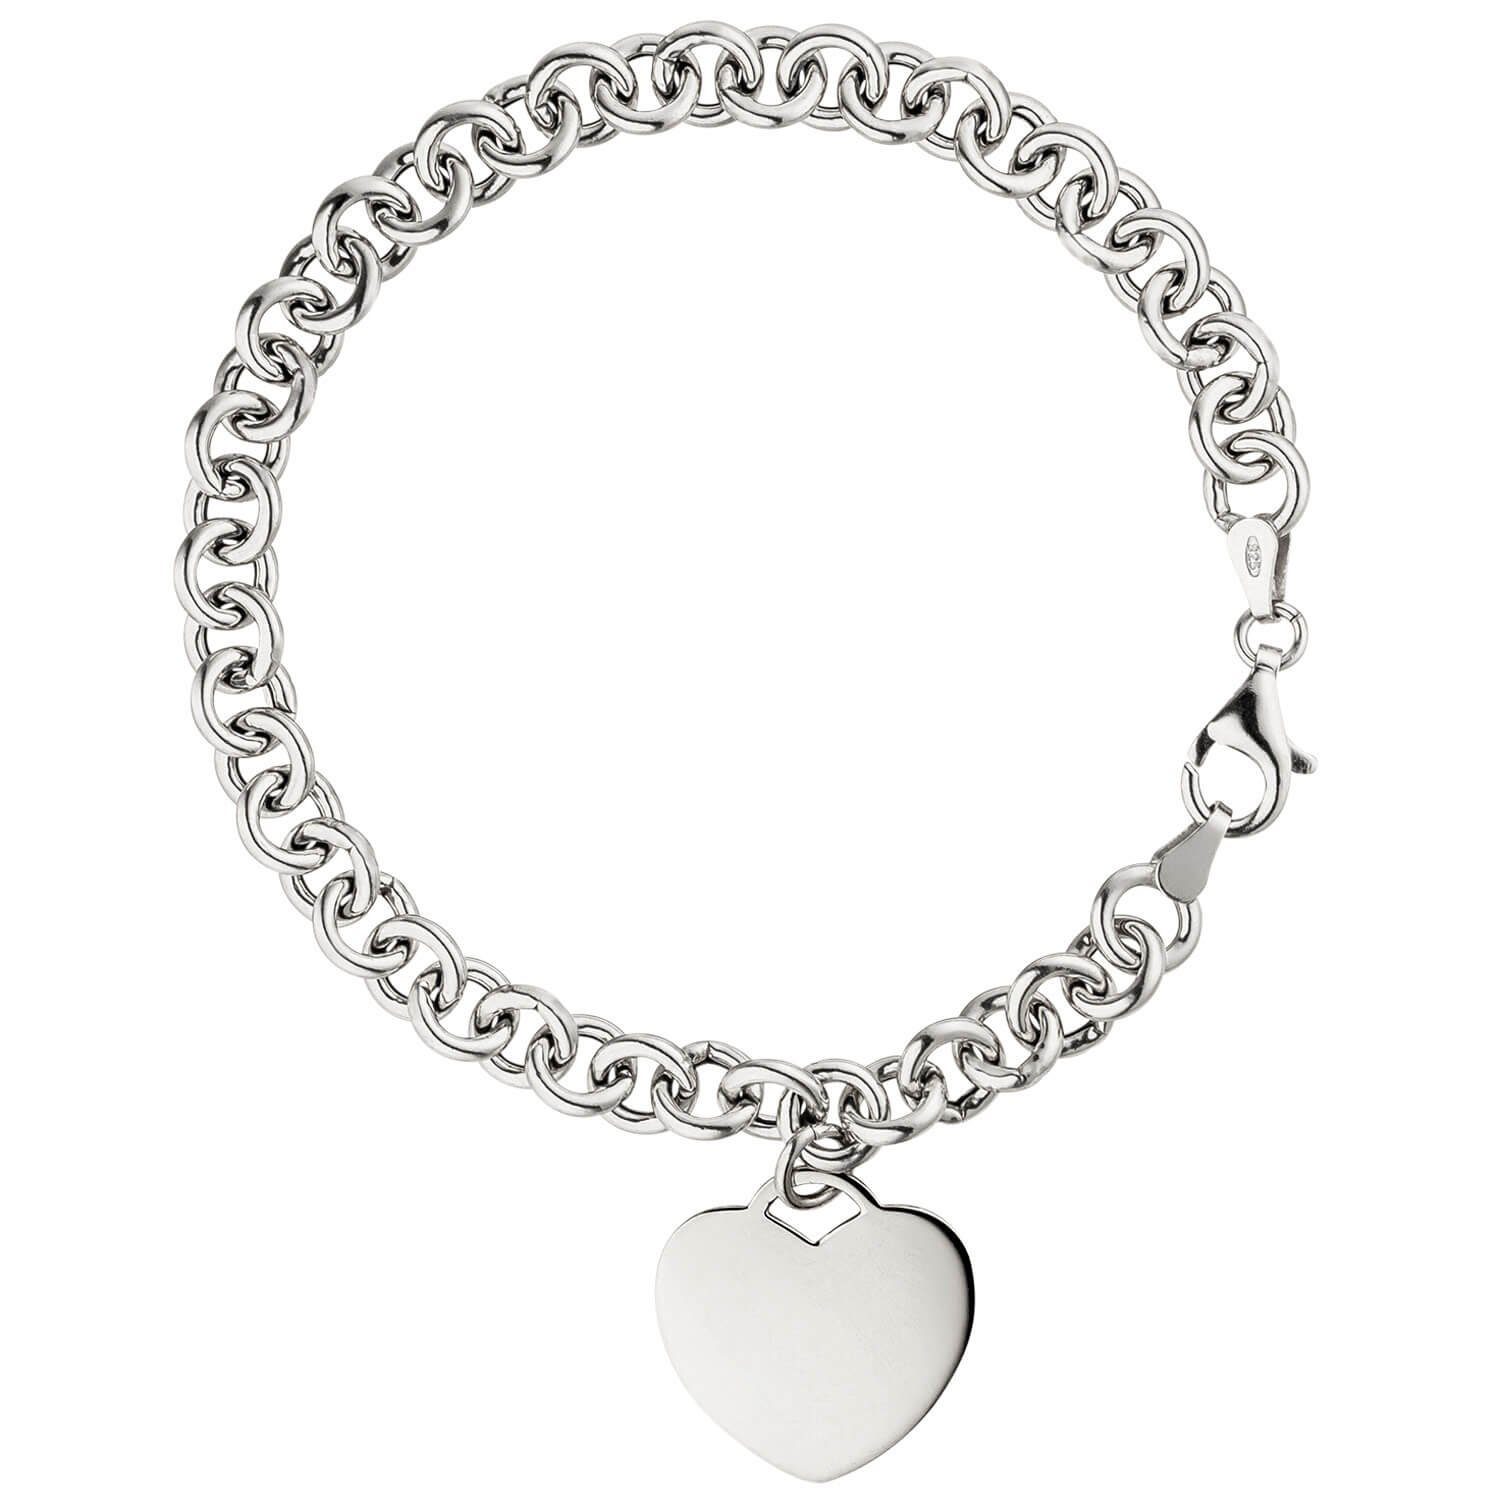 Schmuck Krone Silberarmband 6,4mm Armband Erbsarmband mit Anhänger Herz Herzchen 925 Silber rhodiniert, 19cm